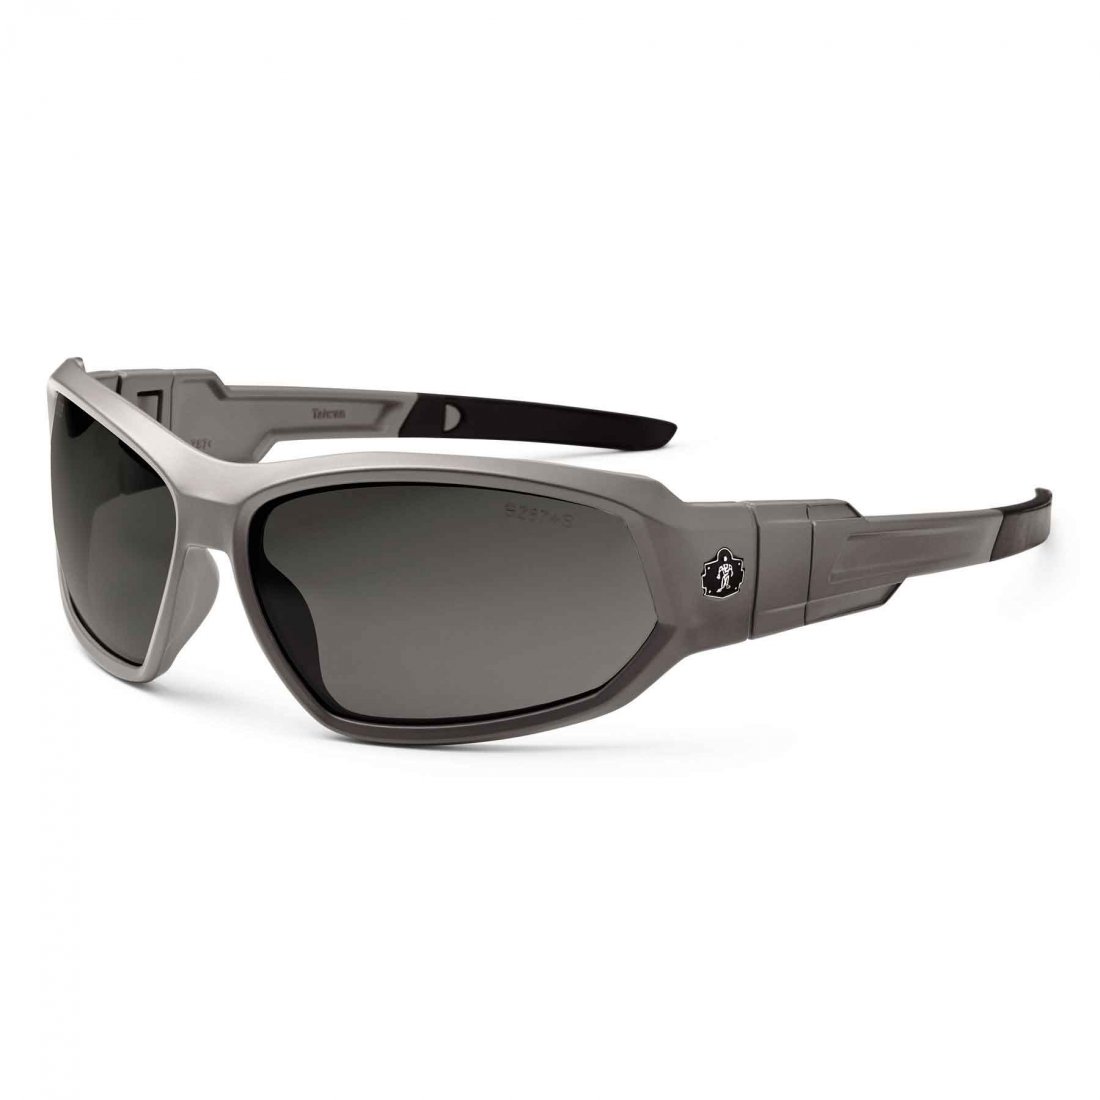 Ergodyne Loki Polarized Smoke Lens Matte Gray Safety Glasses Goggles 4175